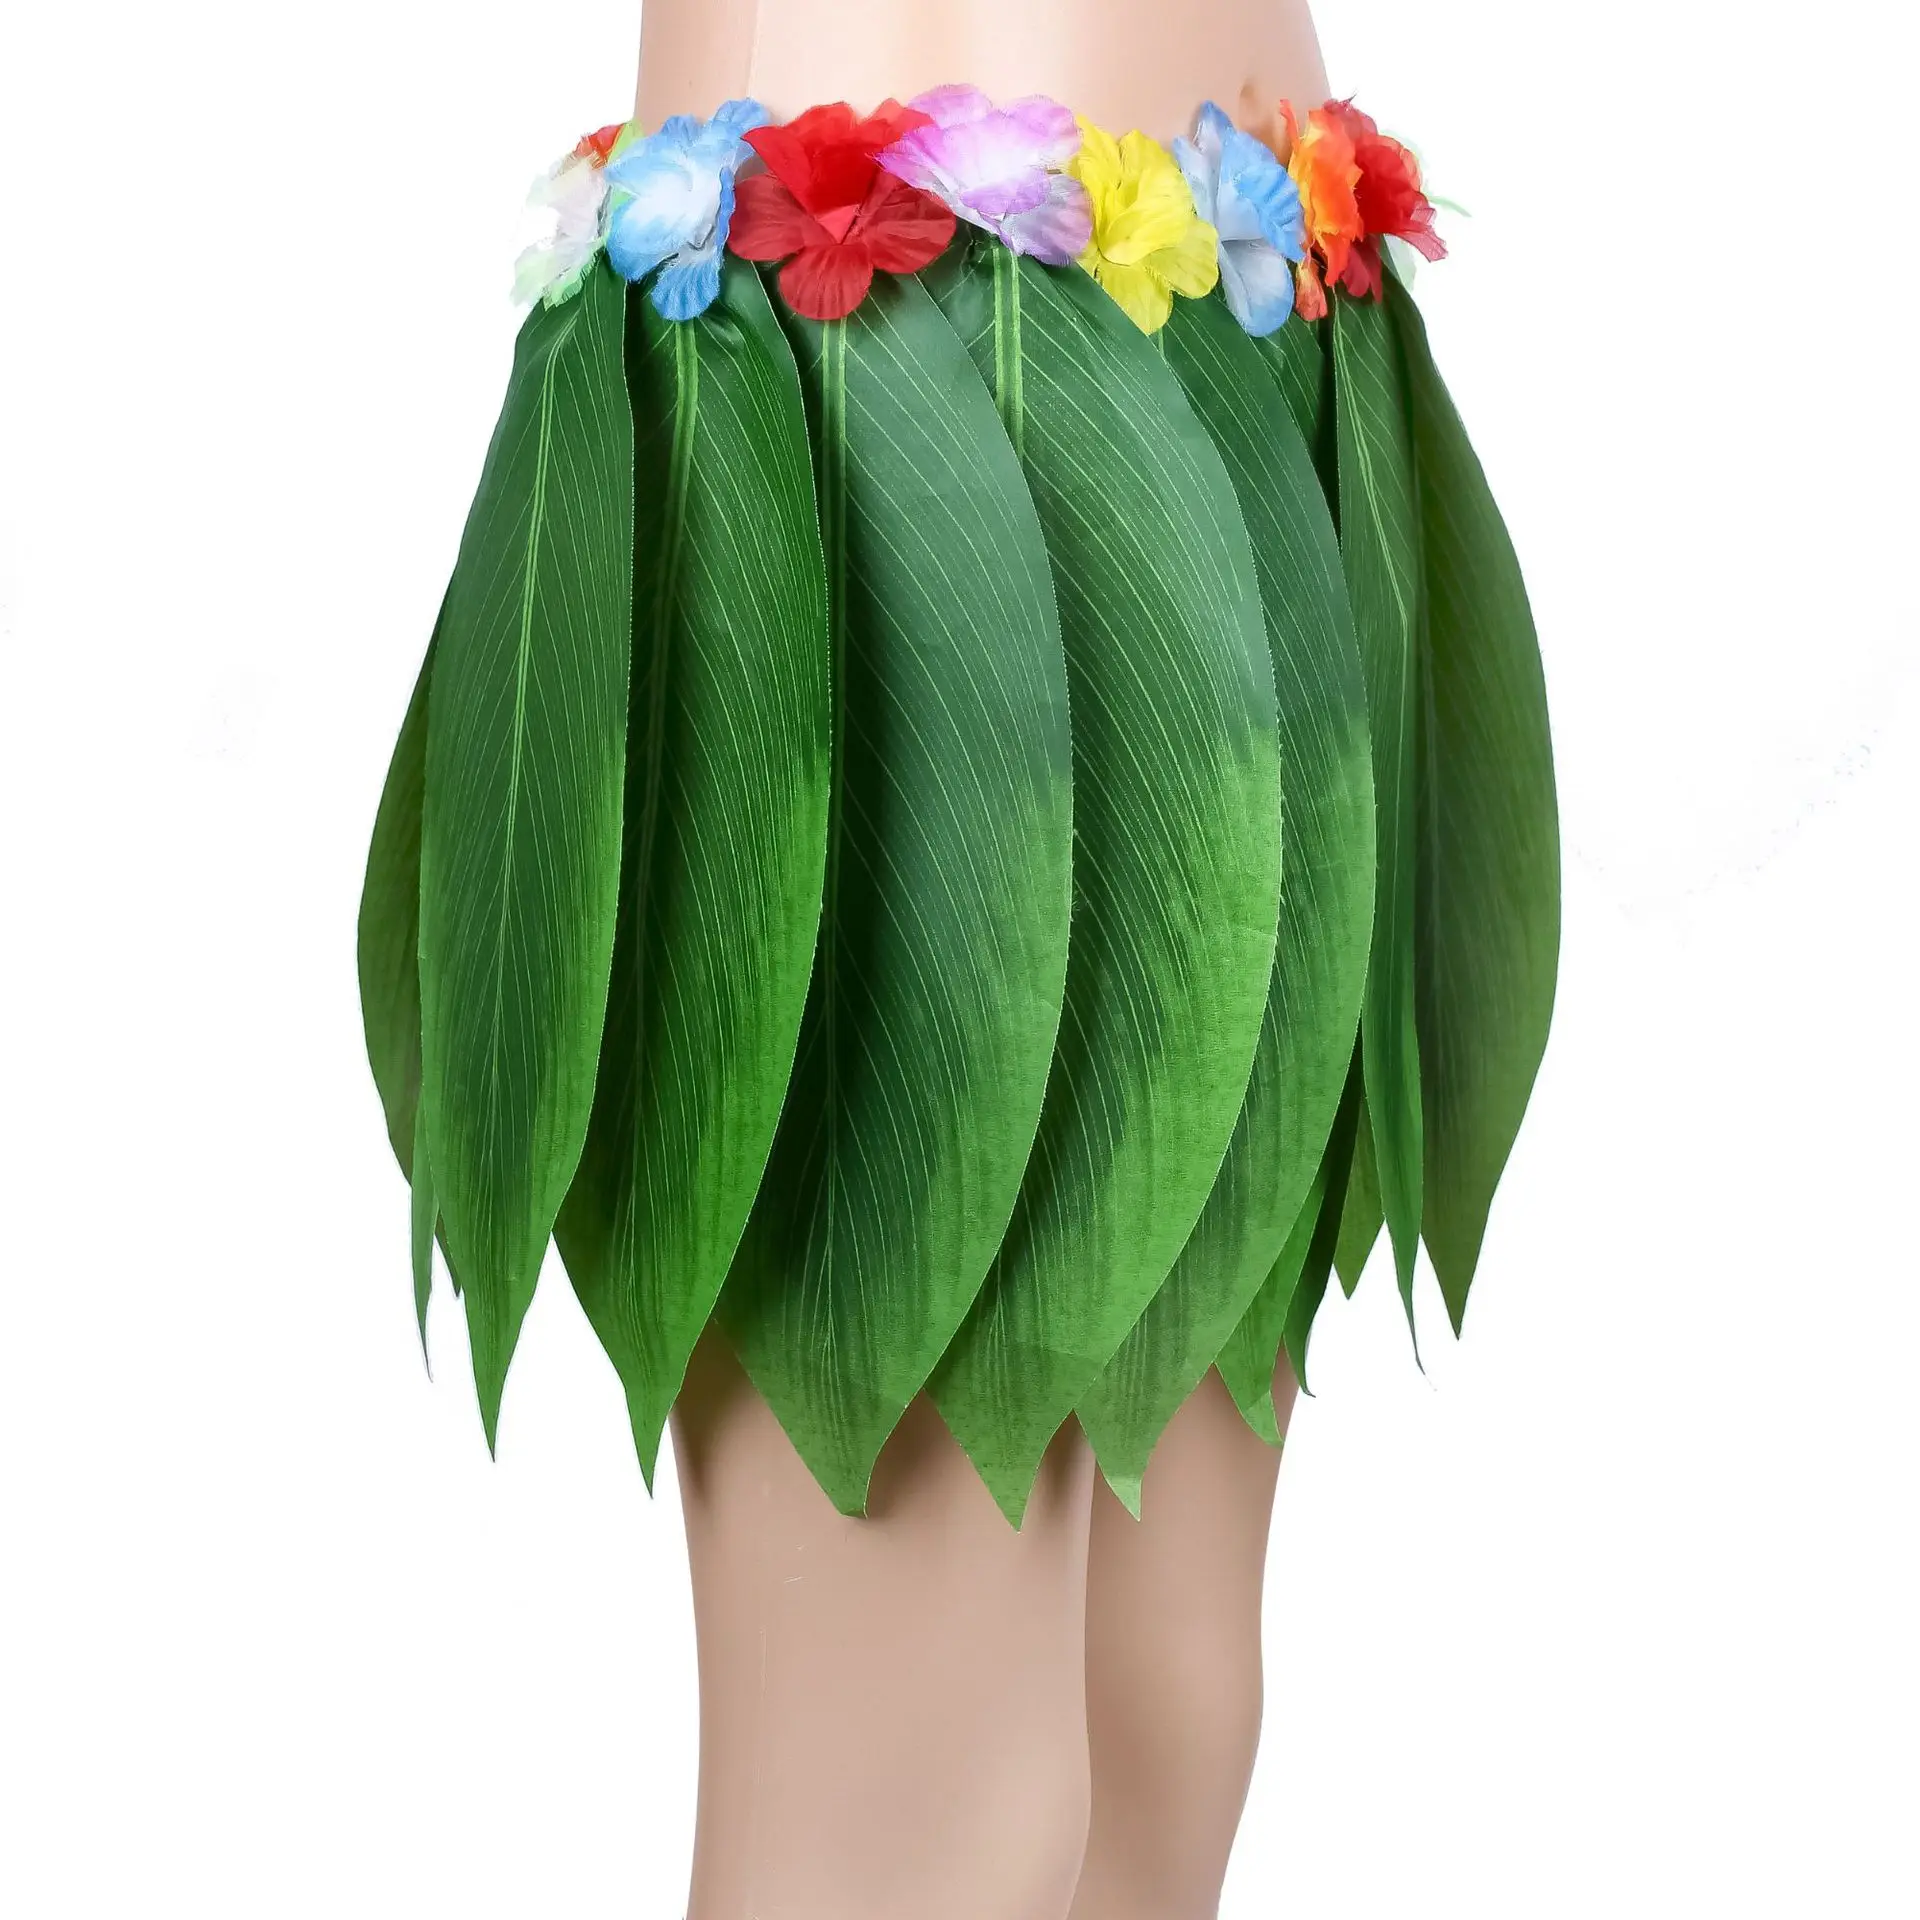 Горячая 38 см Гавайская «хула» травяная вечерние платья юбки хула пляжный танцевальный костюм горячий энтузиазм хула юбка путешествия фото реквизит